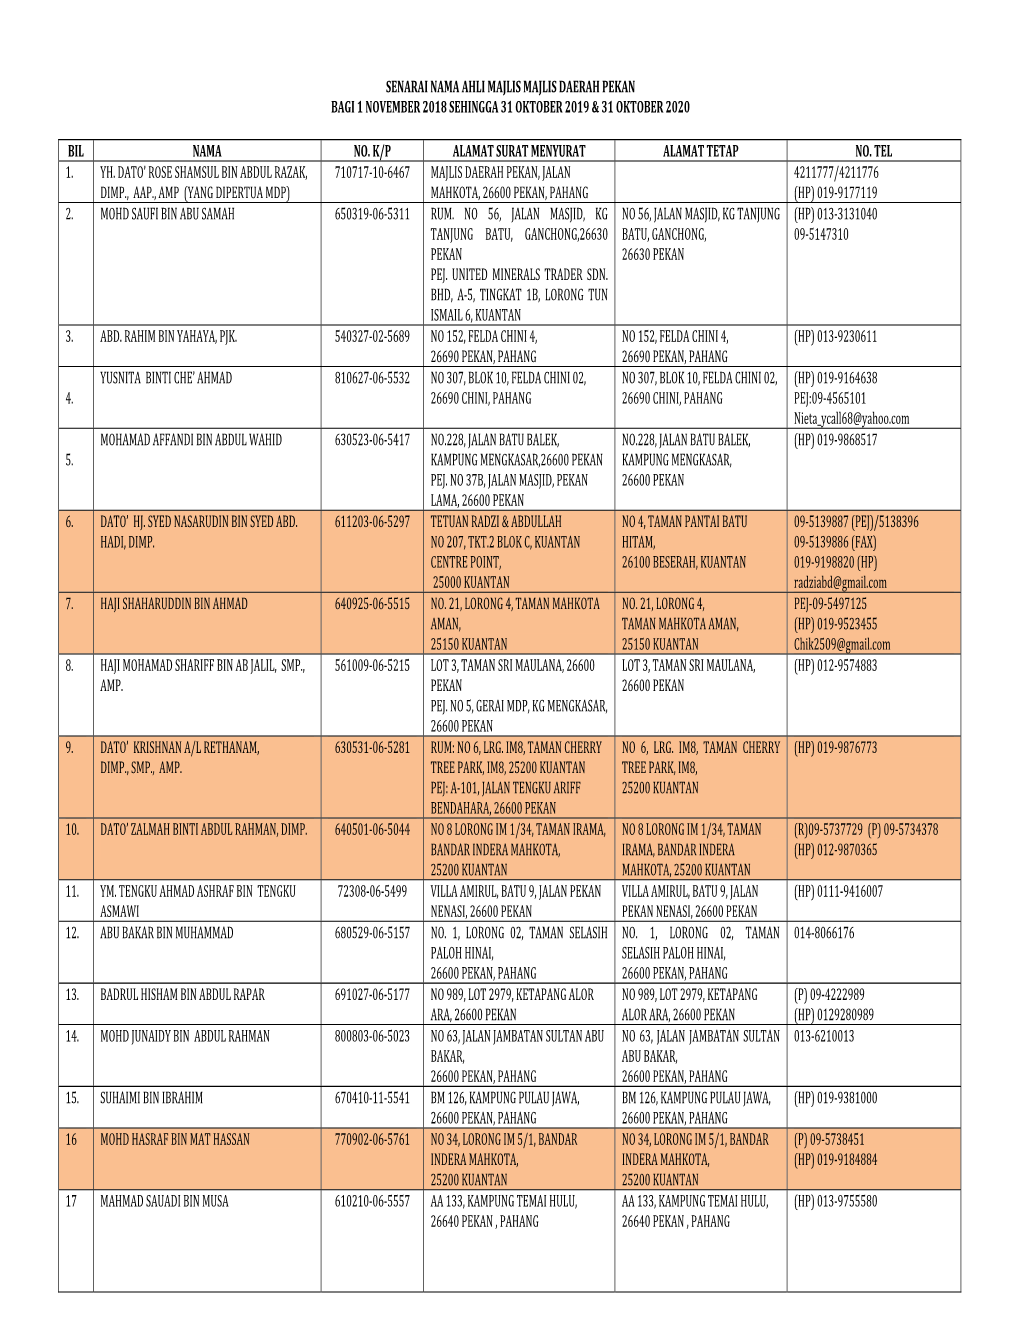 Senarai Nama Ahli Majlis Majlis Daerah Pekan Bagi 1 November 2018 Sehingga 31 Oktober 2019 & 31 Oktober 2020